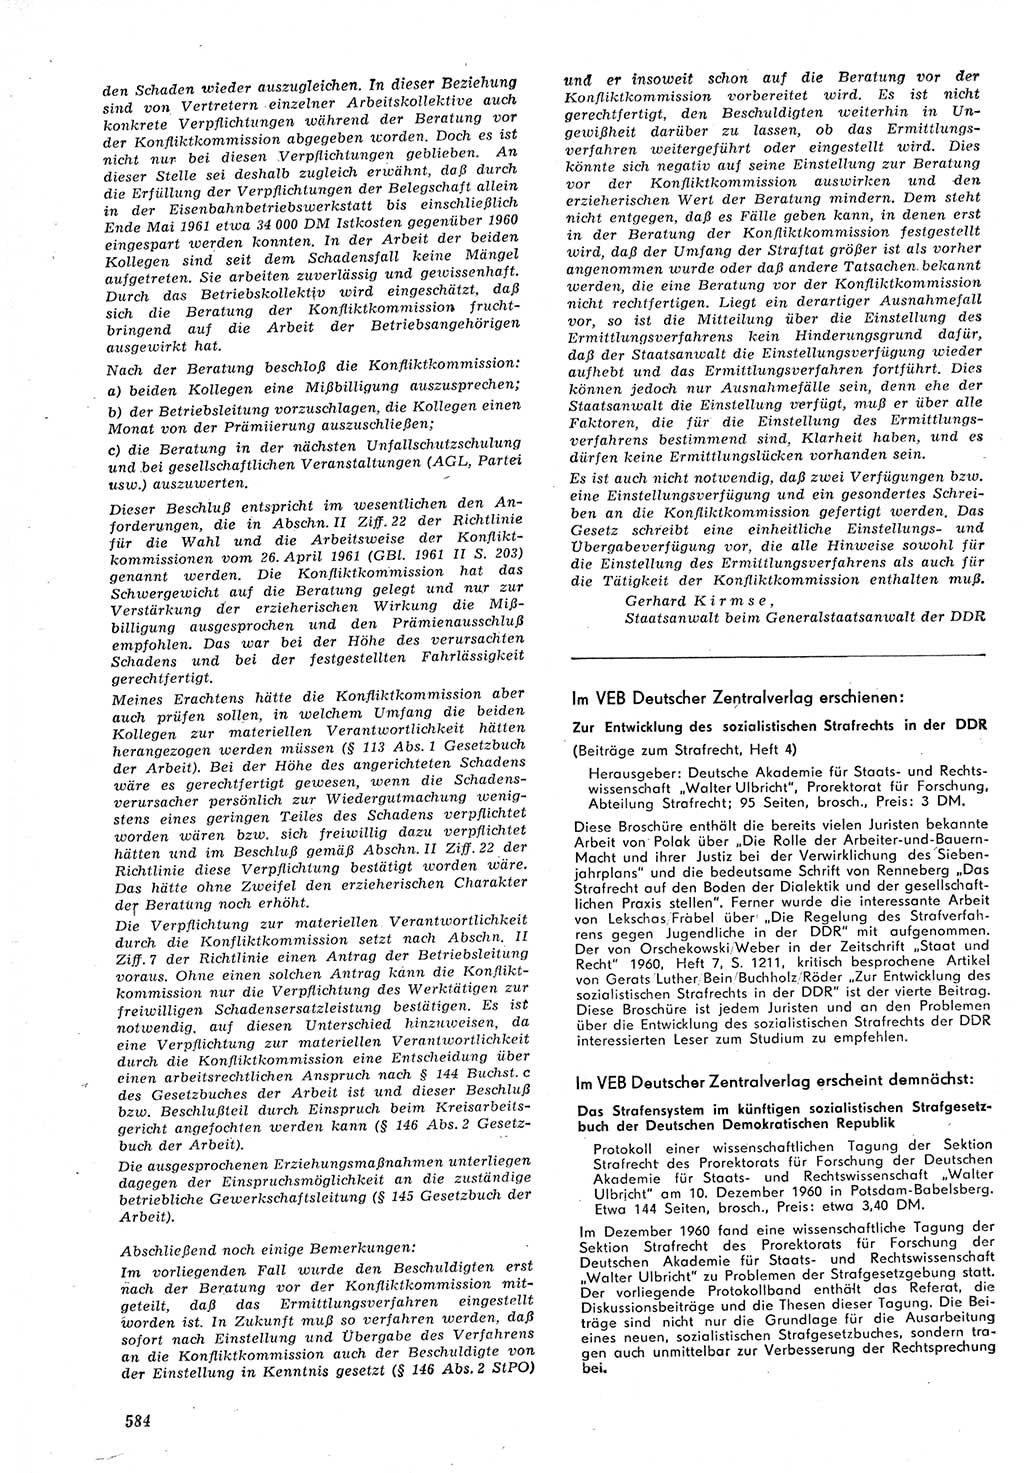 Neue Justiz (NJ), Zeitschrift für Recht und Rechtswissenschaft [Deutsche Demokratische Republik (DDR)], 15. Jahrgang 1961, Seite 584 (NJ DDR 1961, S. 584)